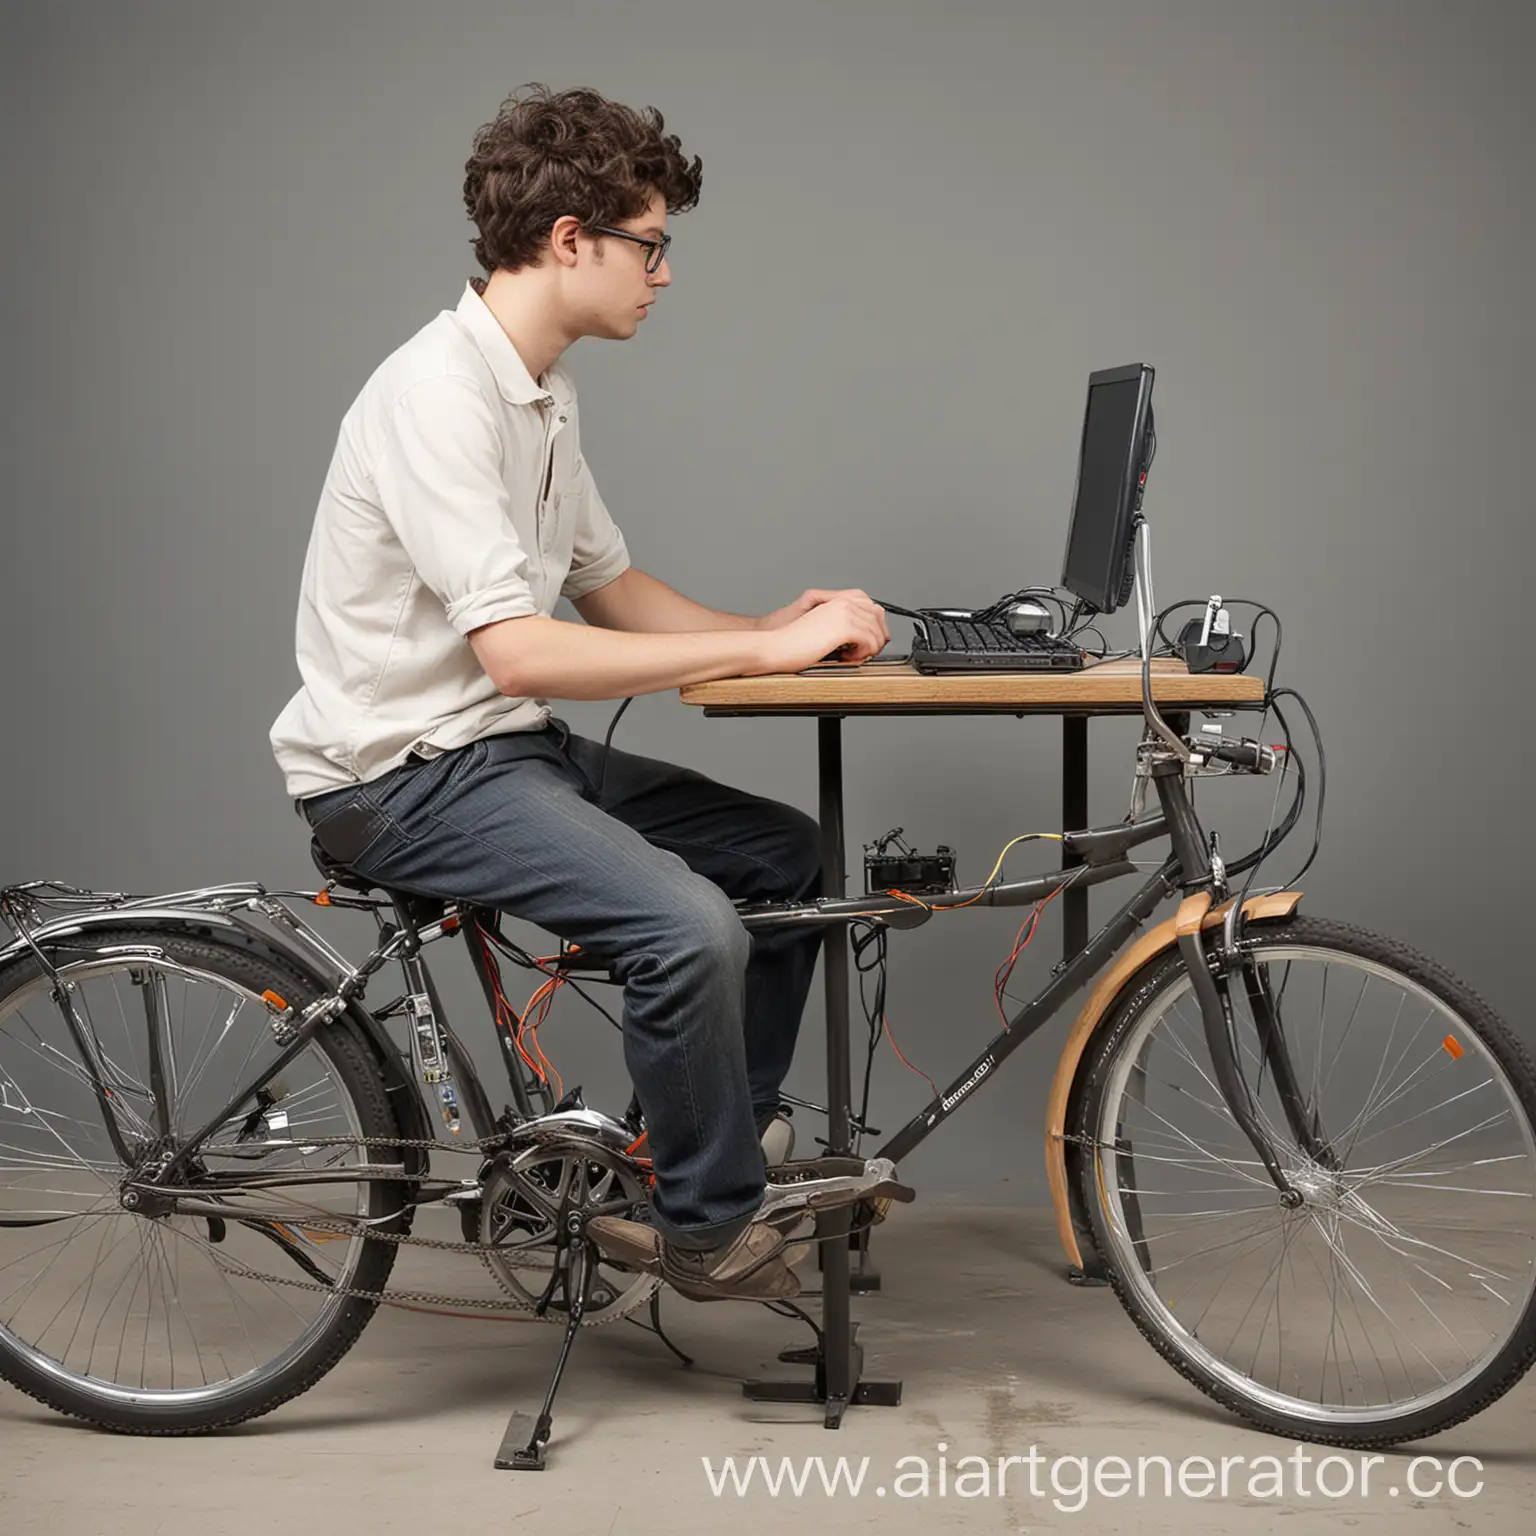 Человек сидит за компьютером, рядом человек крутит педали на велосипеде, велосипед как динамо-машина и вырабатывает электричество, компьютер подключен к велосипеду-динамо-машине и получает от туда электричество.